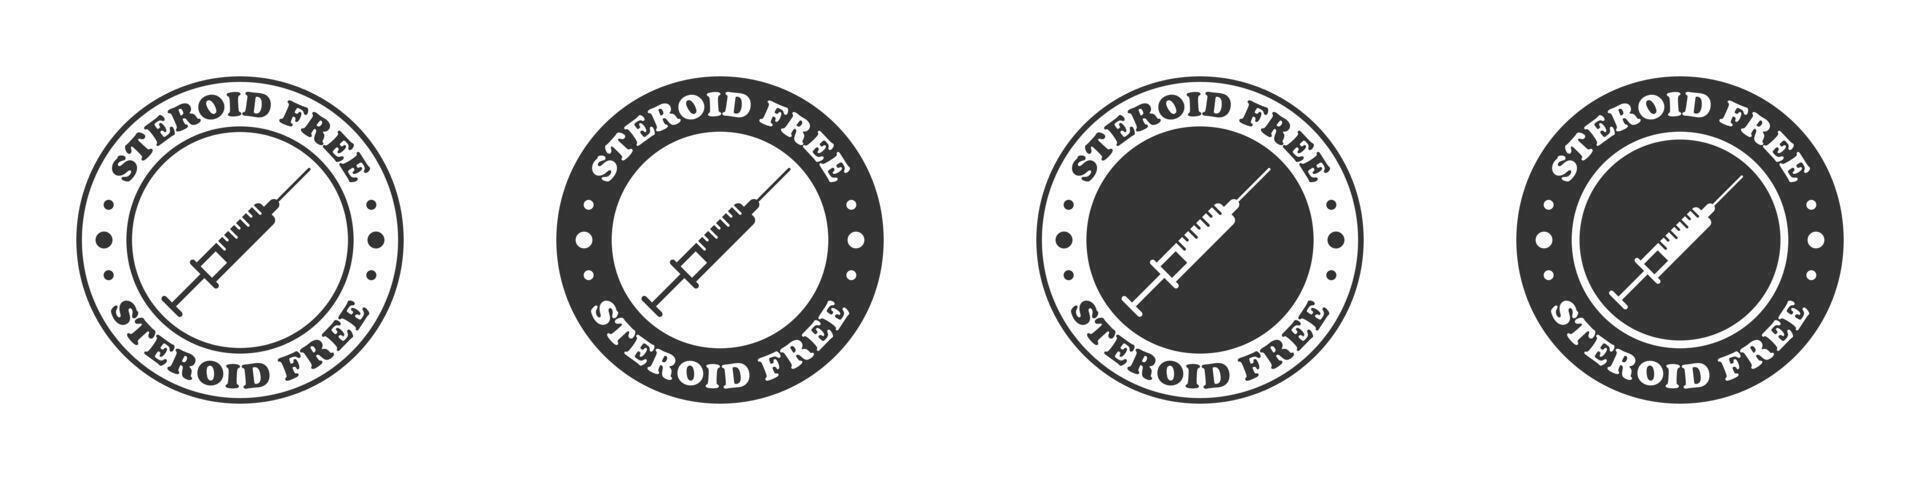 esteroide gratis icono colocar. vector ilustración.